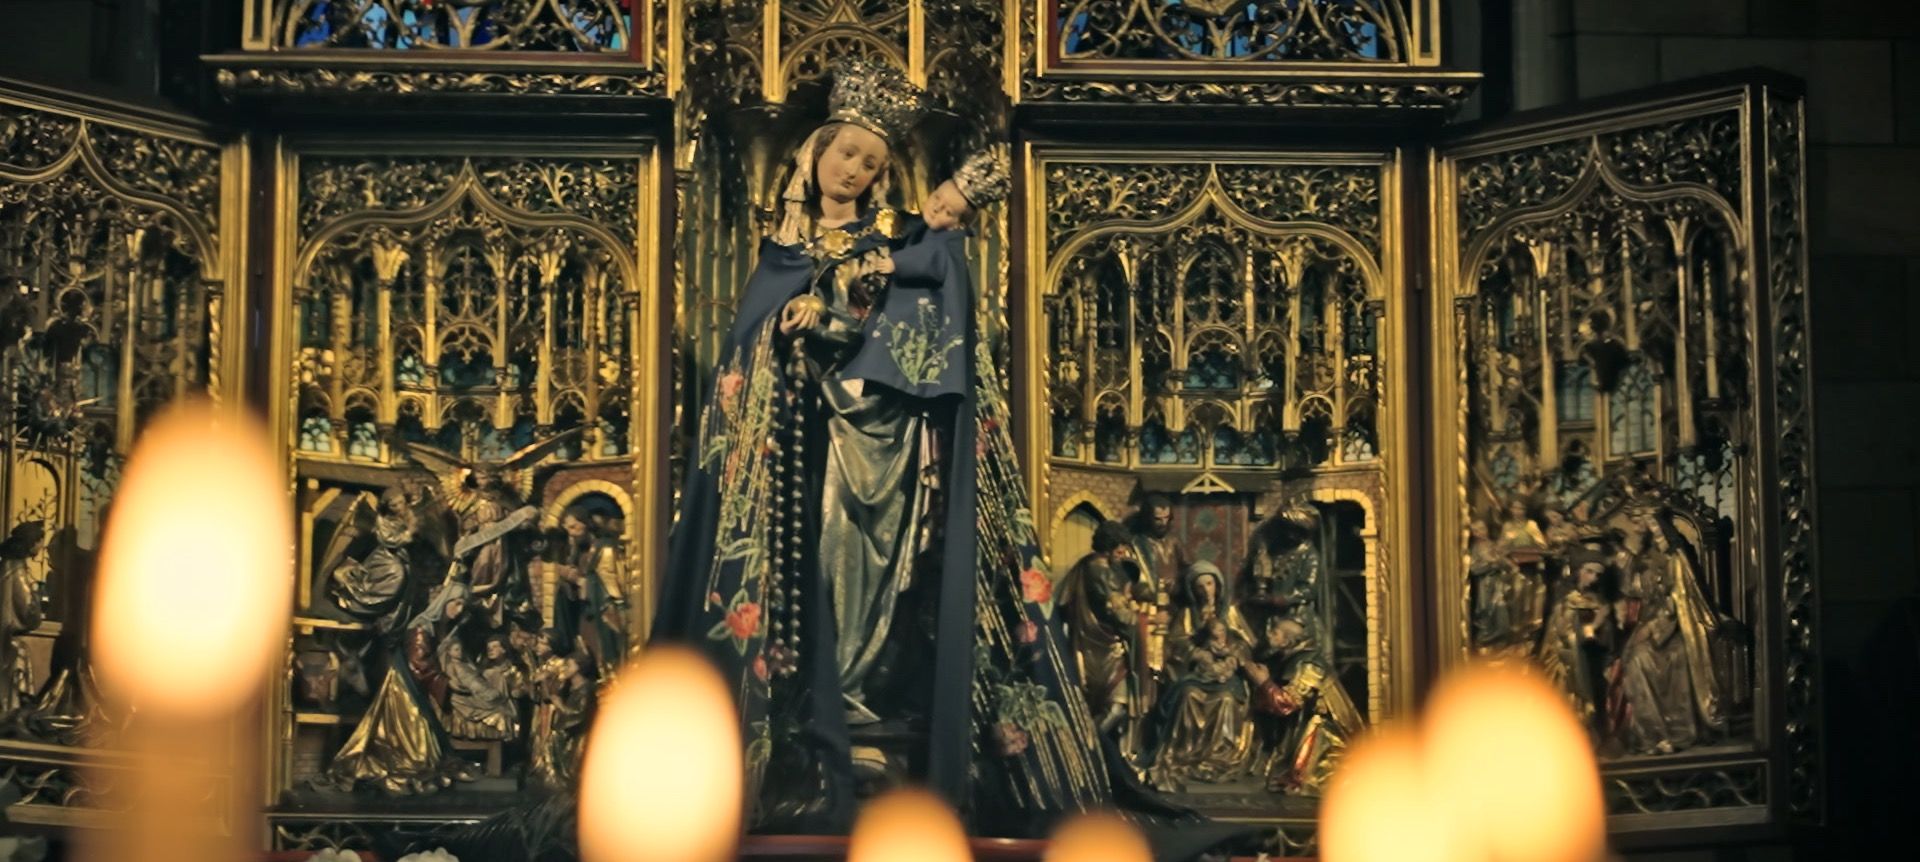 Een voorbeeld van beeldvorming rondom het leven van Maria